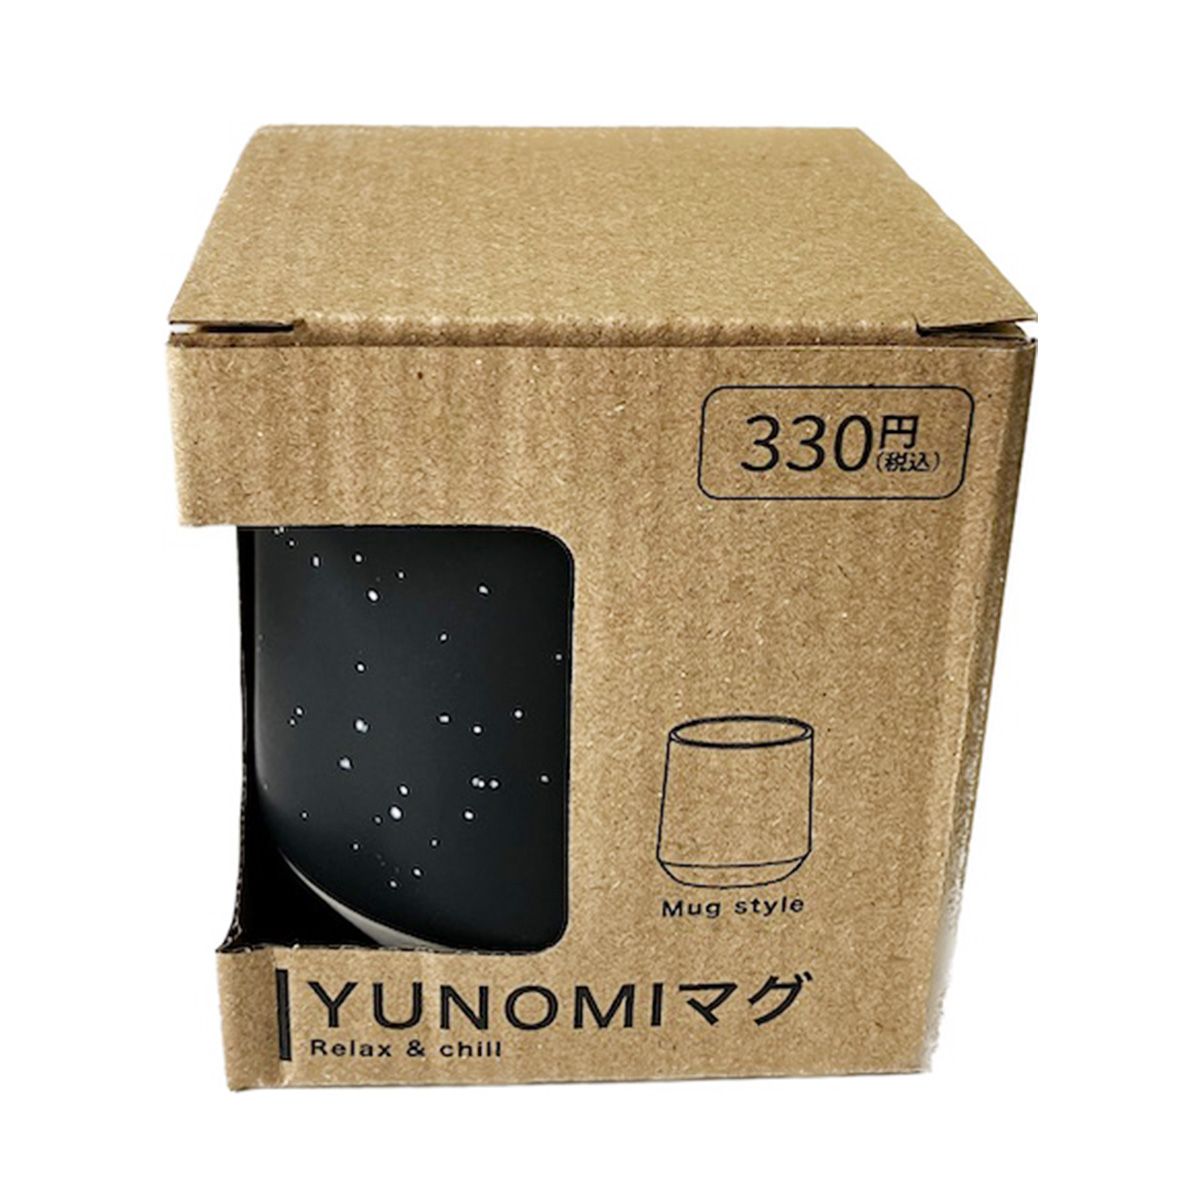 湯呑み マグカップ コップ YUNOMIマグ ブラック 9001/345685